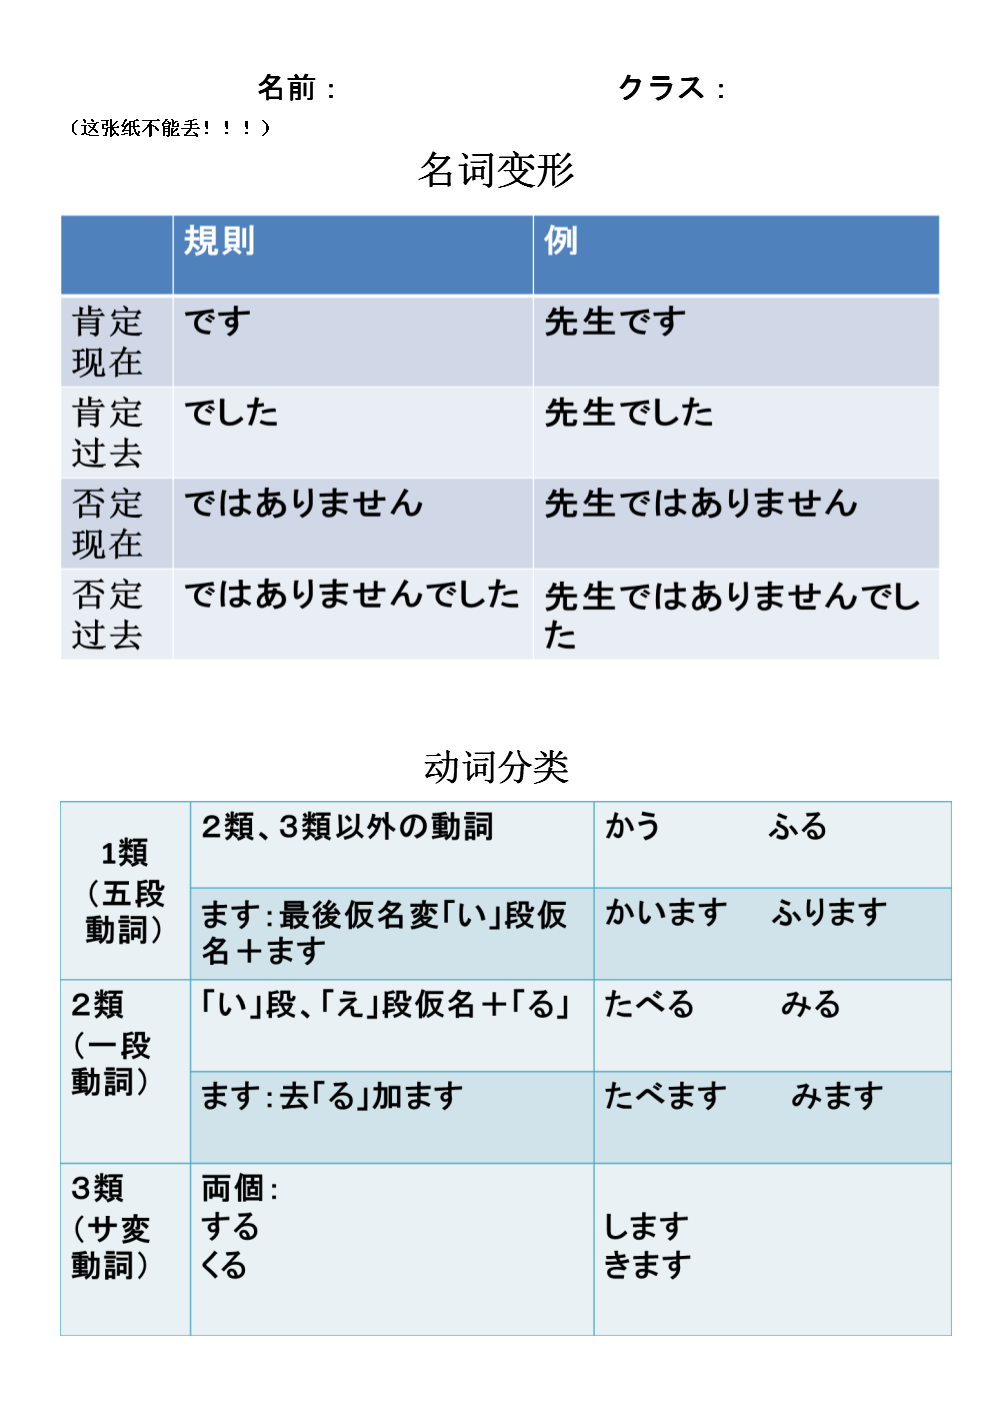 _语法日语书写大全规范1到10_日语书写用语